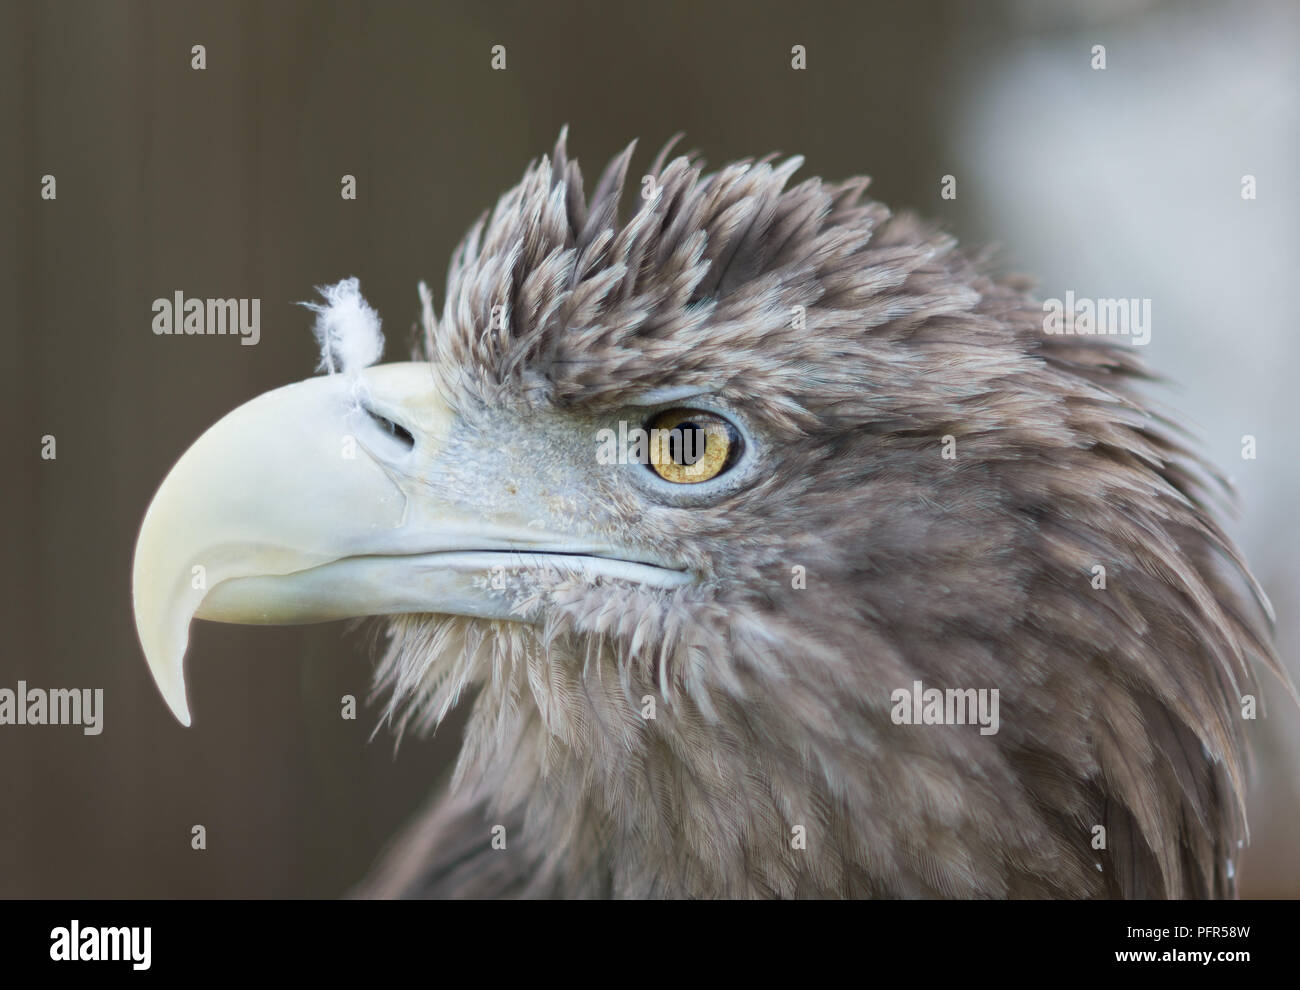 Retrato de águila de cerca. Pájaros de pie y observando alrededor. Mirada profunda. Foto de stock